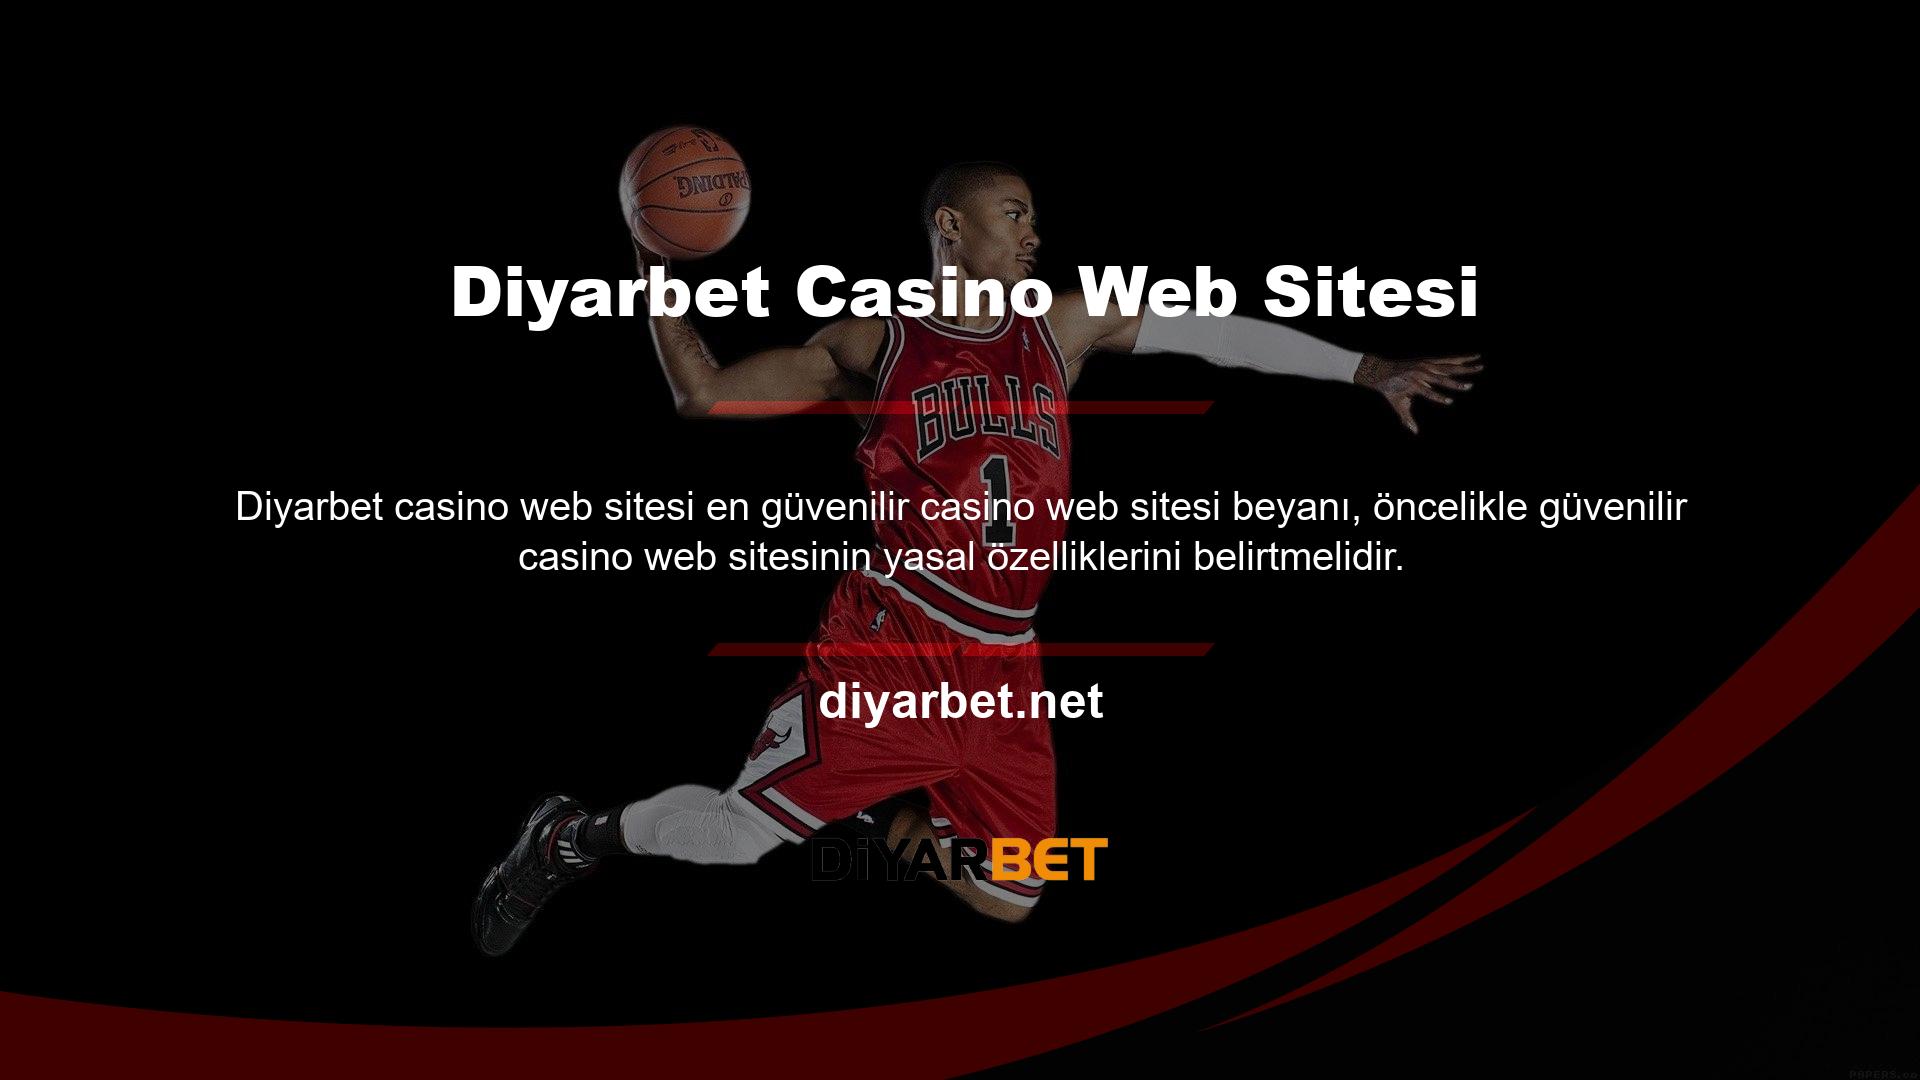 Diyarbet Casino web sitesinde hesap açmak, para yatırmak ve oyun oynamak istiyorsanız, lütfen önce şirket bilgilerini öğrenin